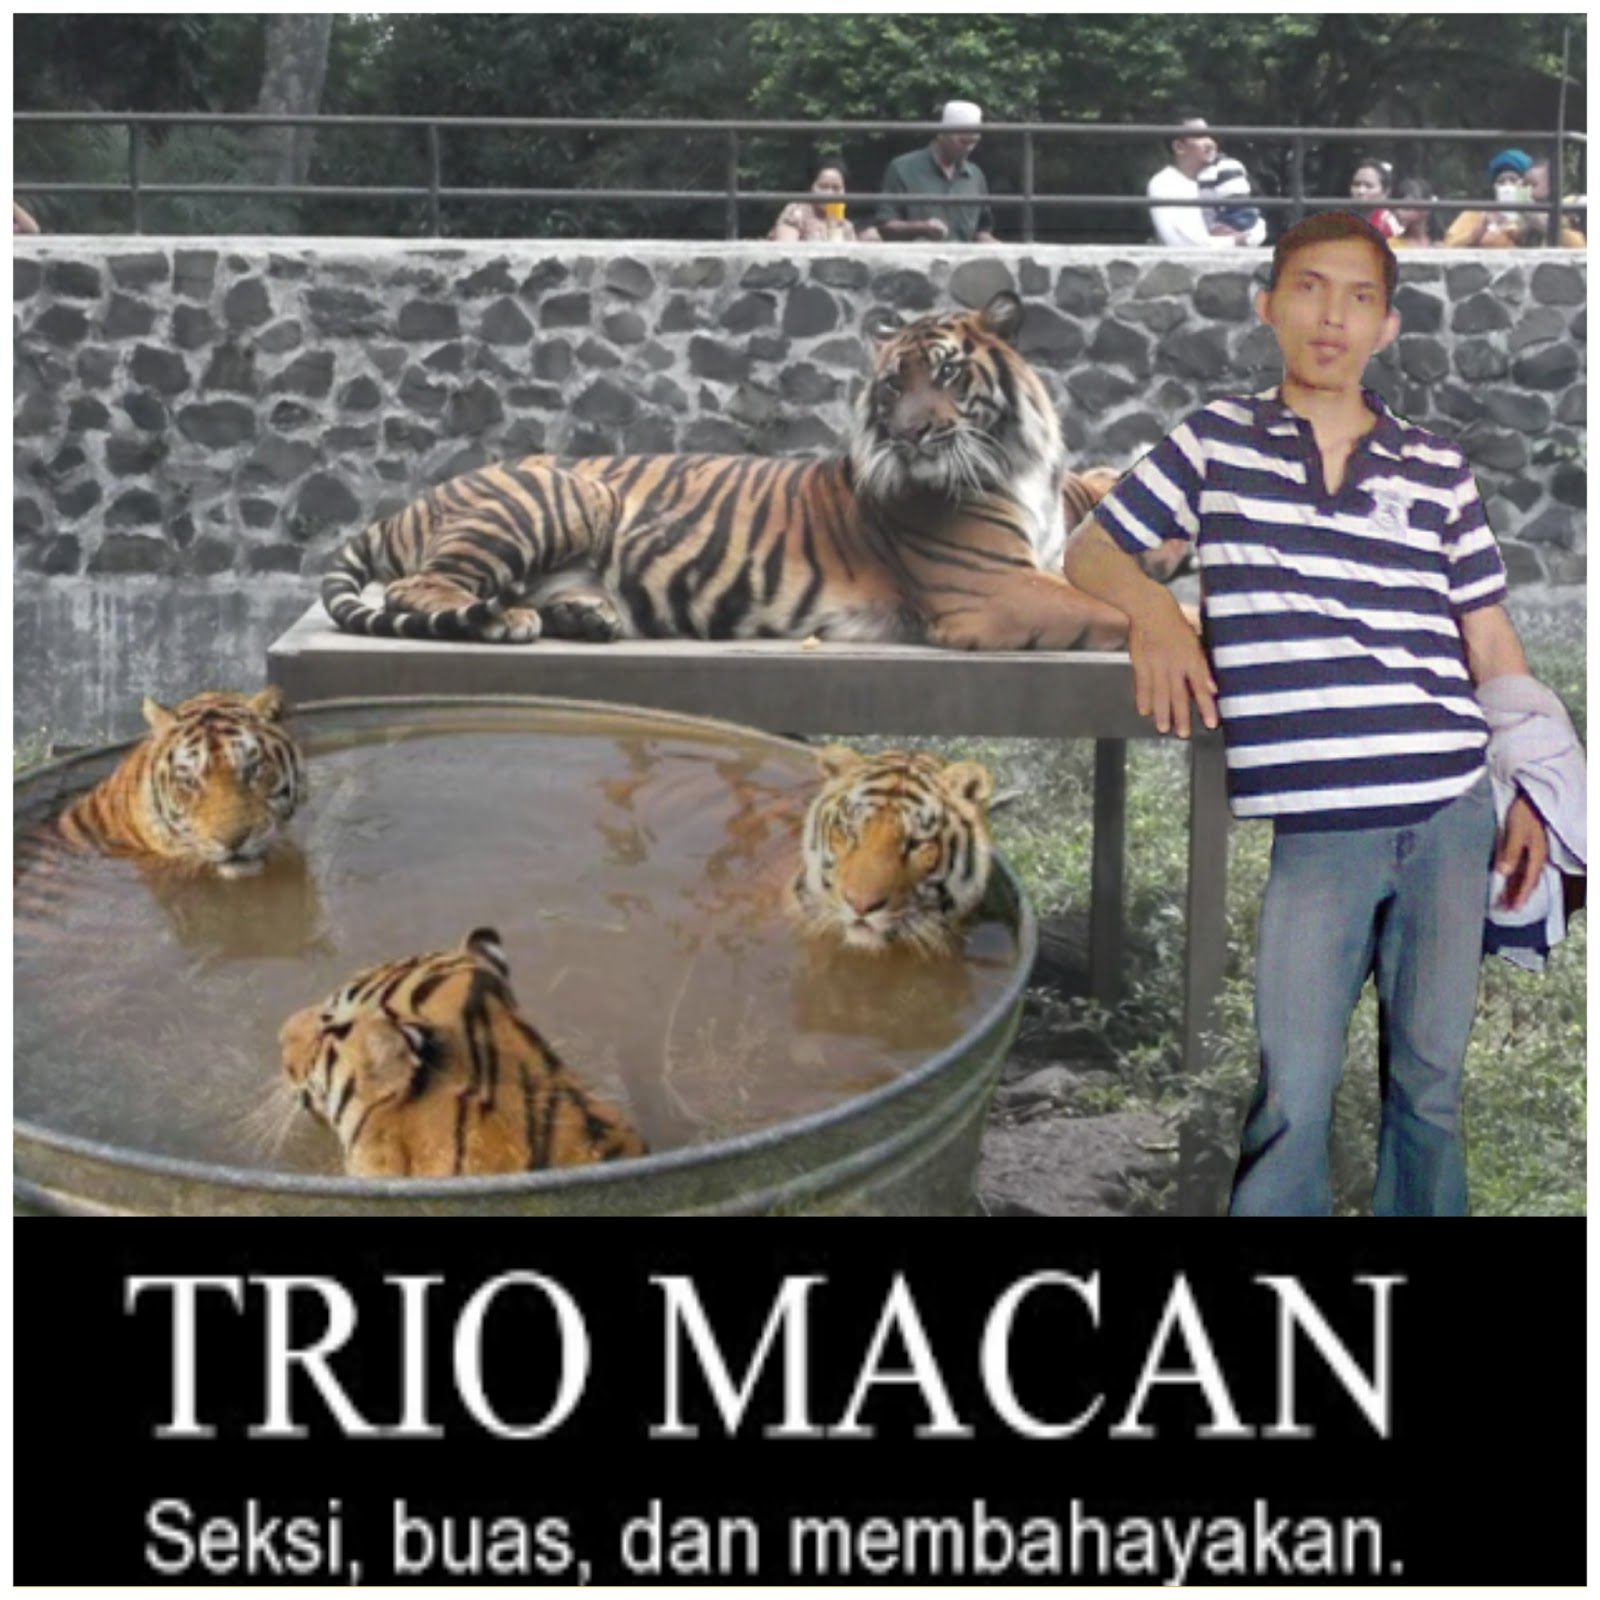 fond d'écran kucing anggora persia bergerak,tigre,tigre du bengale,tigre de sibérie,faune,félidés